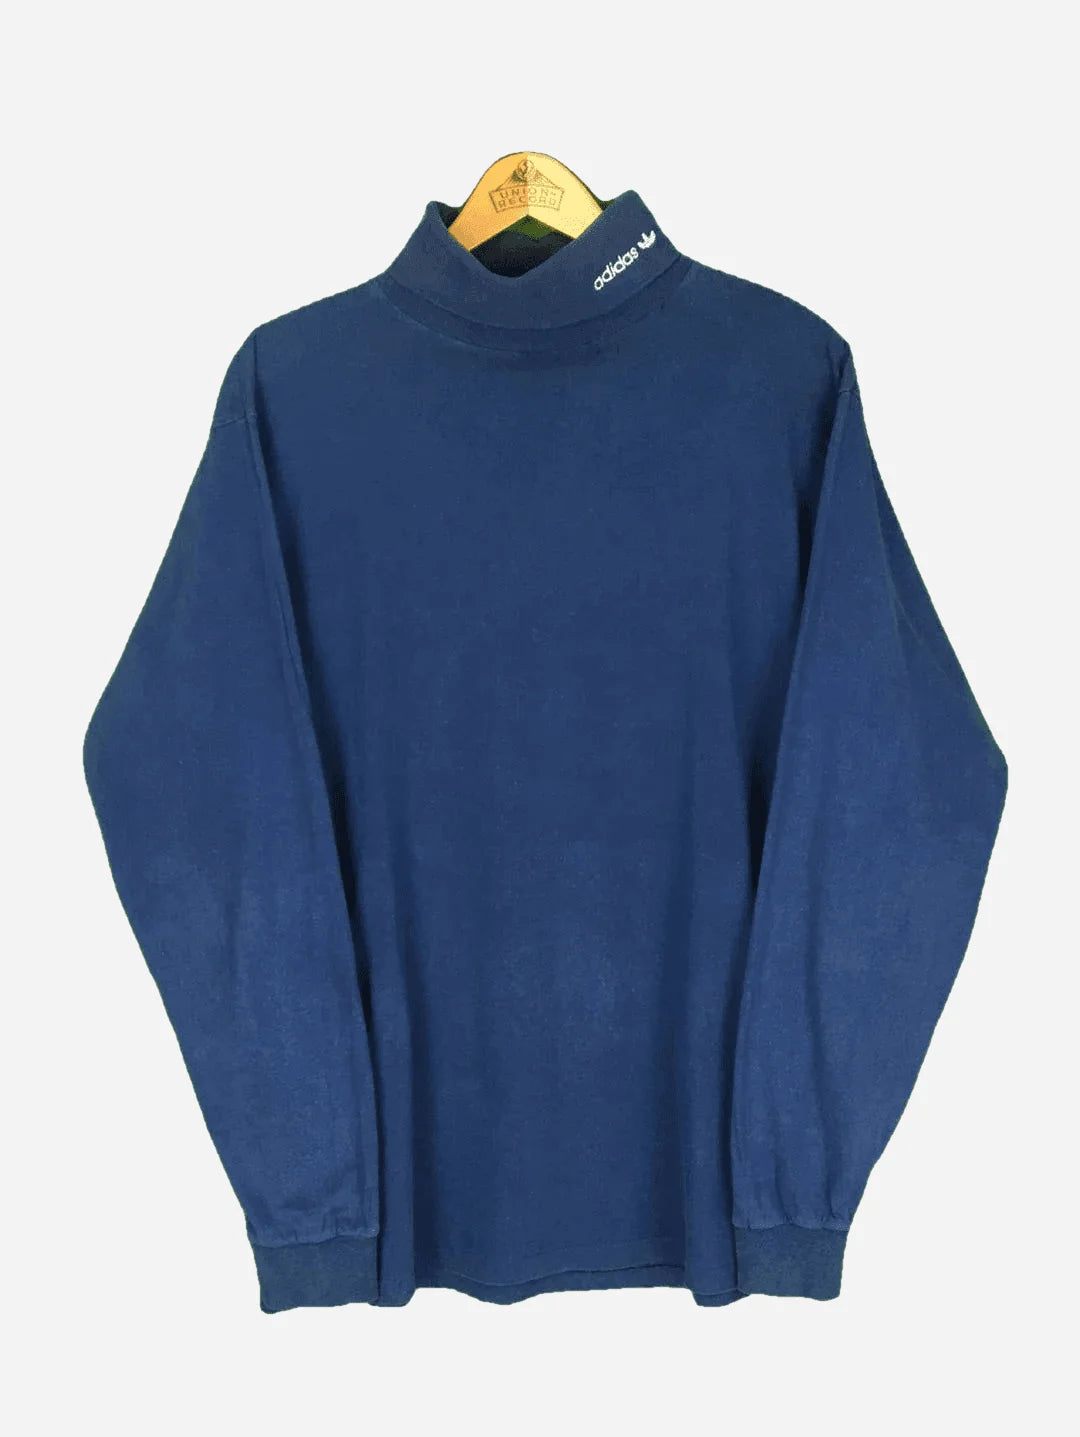 Adidas Rollkragen Sweater (L)